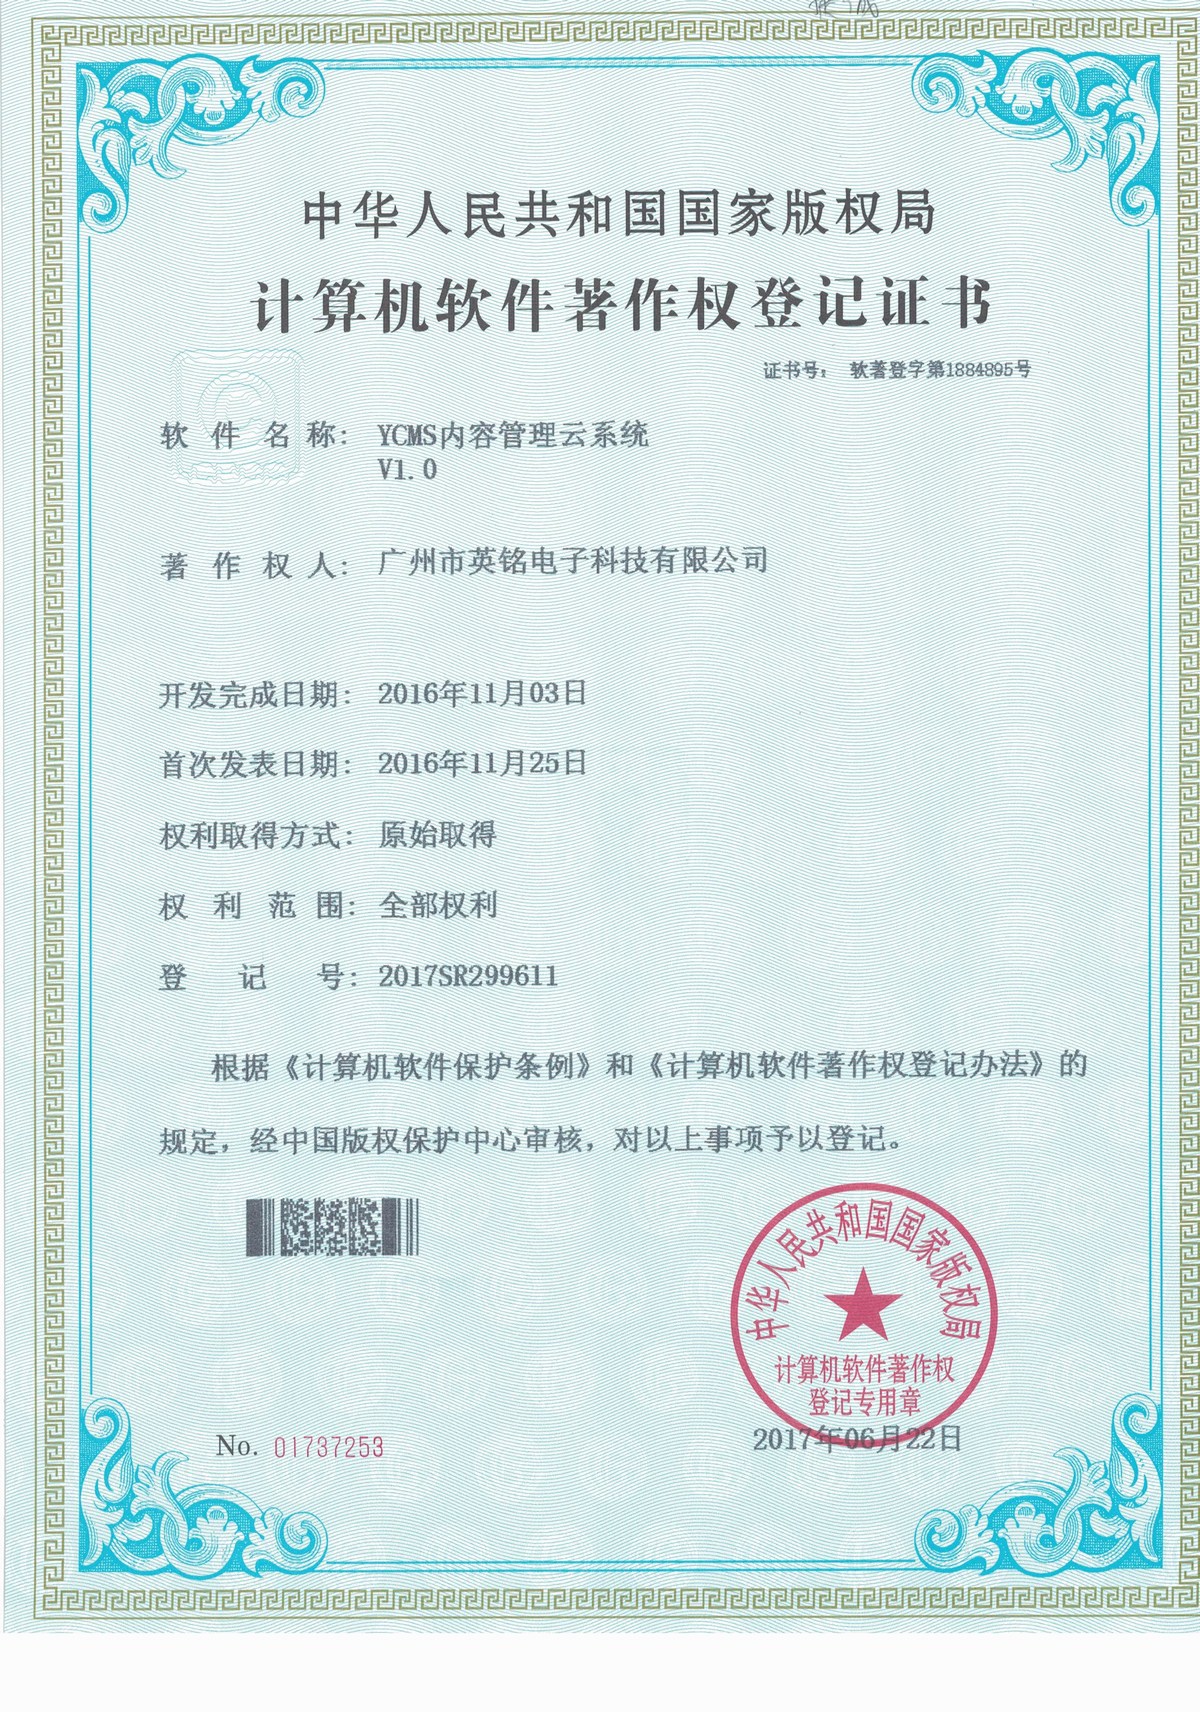 隆广镇企业网站软件著作权证